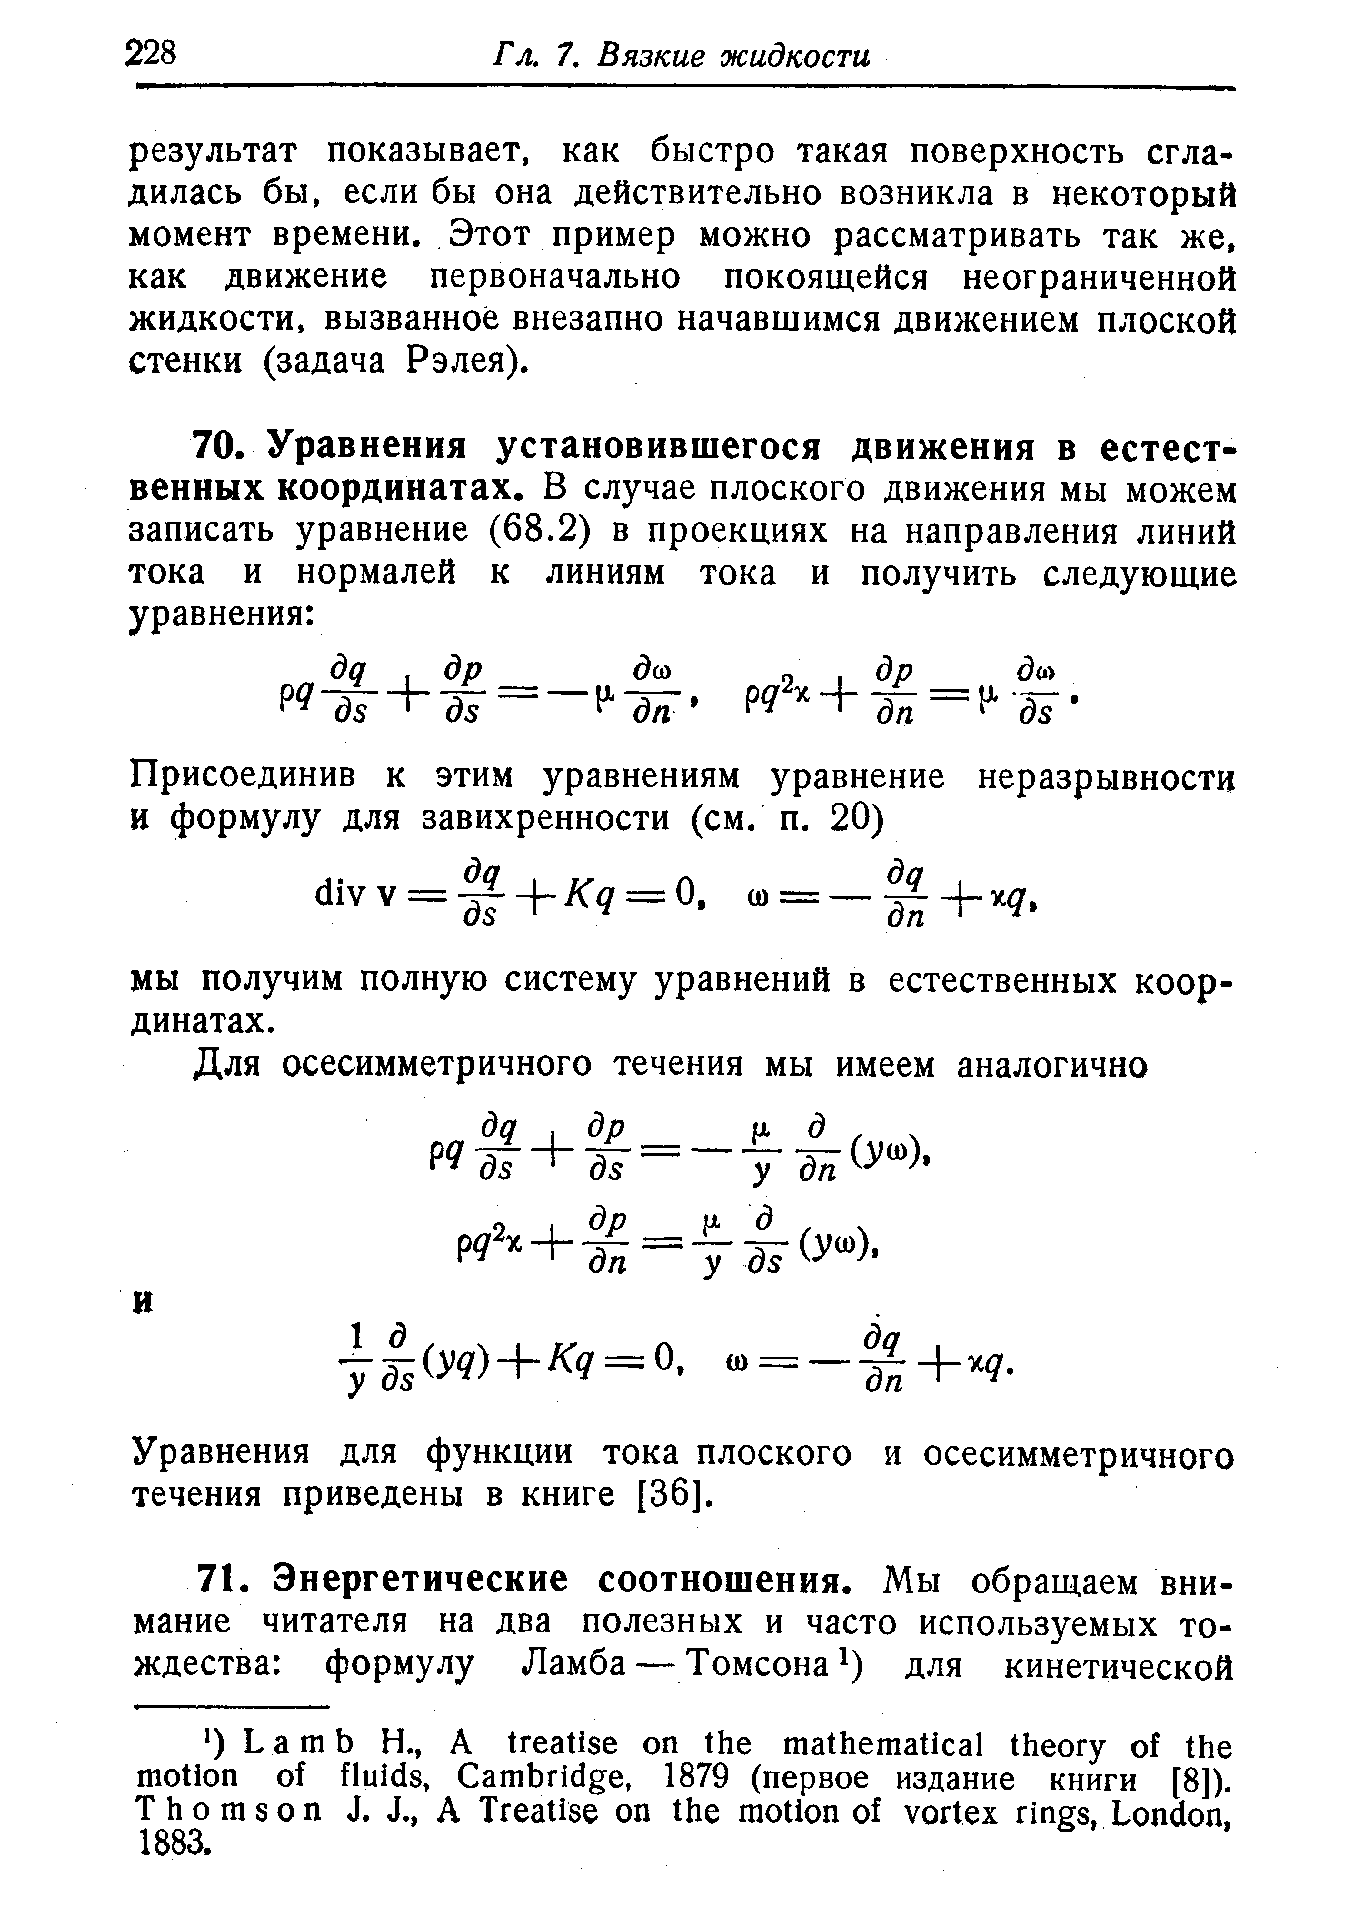 Уравнения для функции тока плоского и осесимметричного течения приведены в книге [36].
